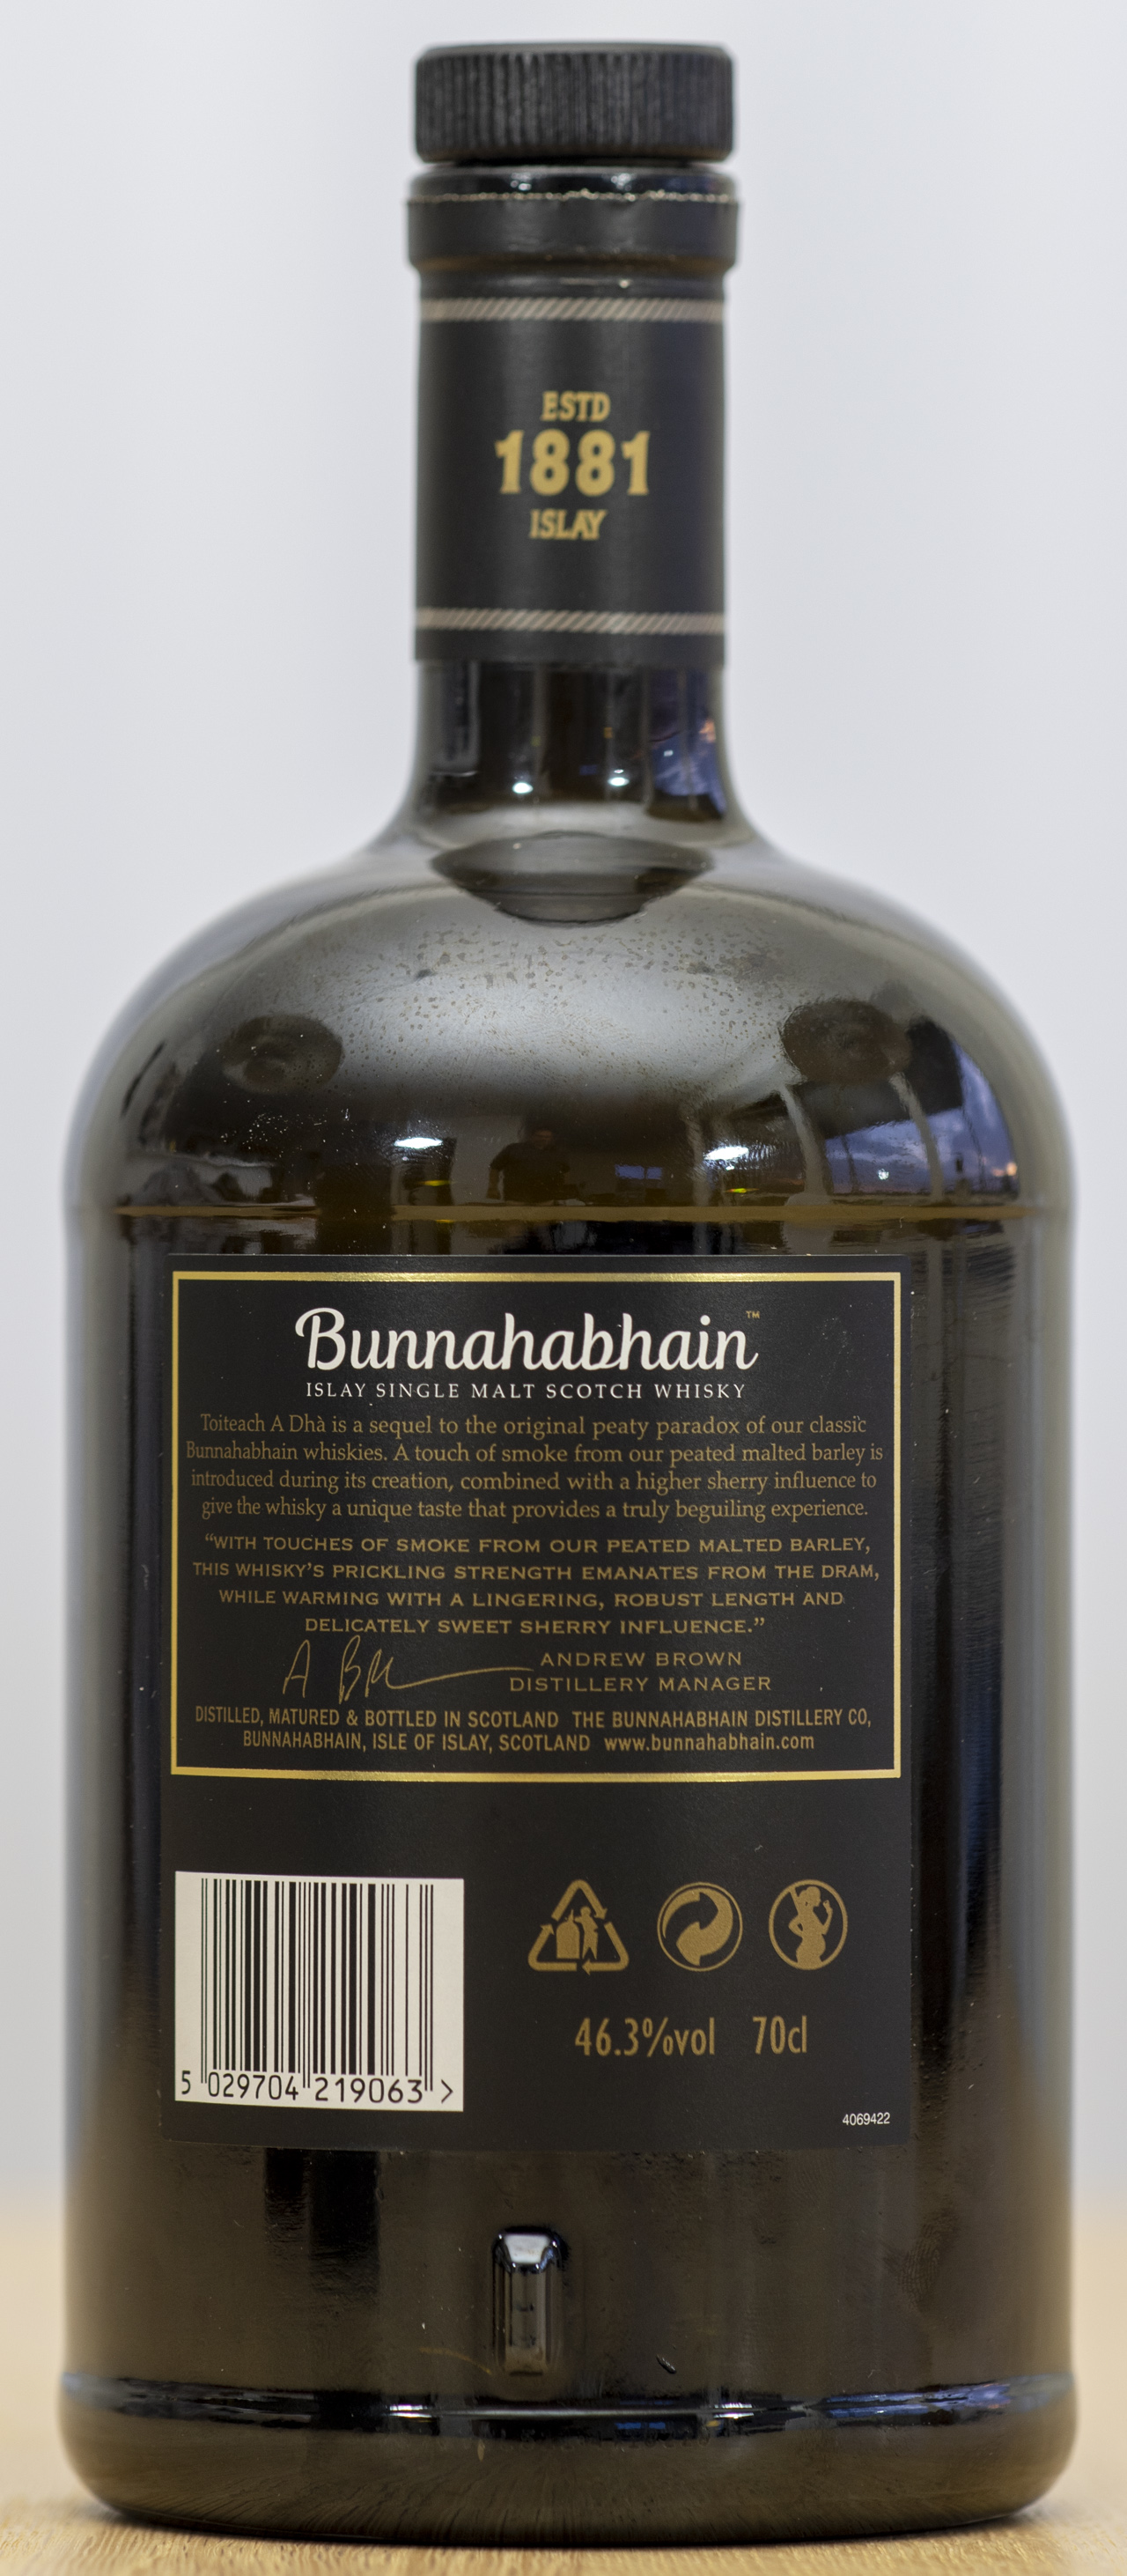 Billede: PHC_1529 - Bunnahabhain Toiteach a Dha - bottle back.jpg